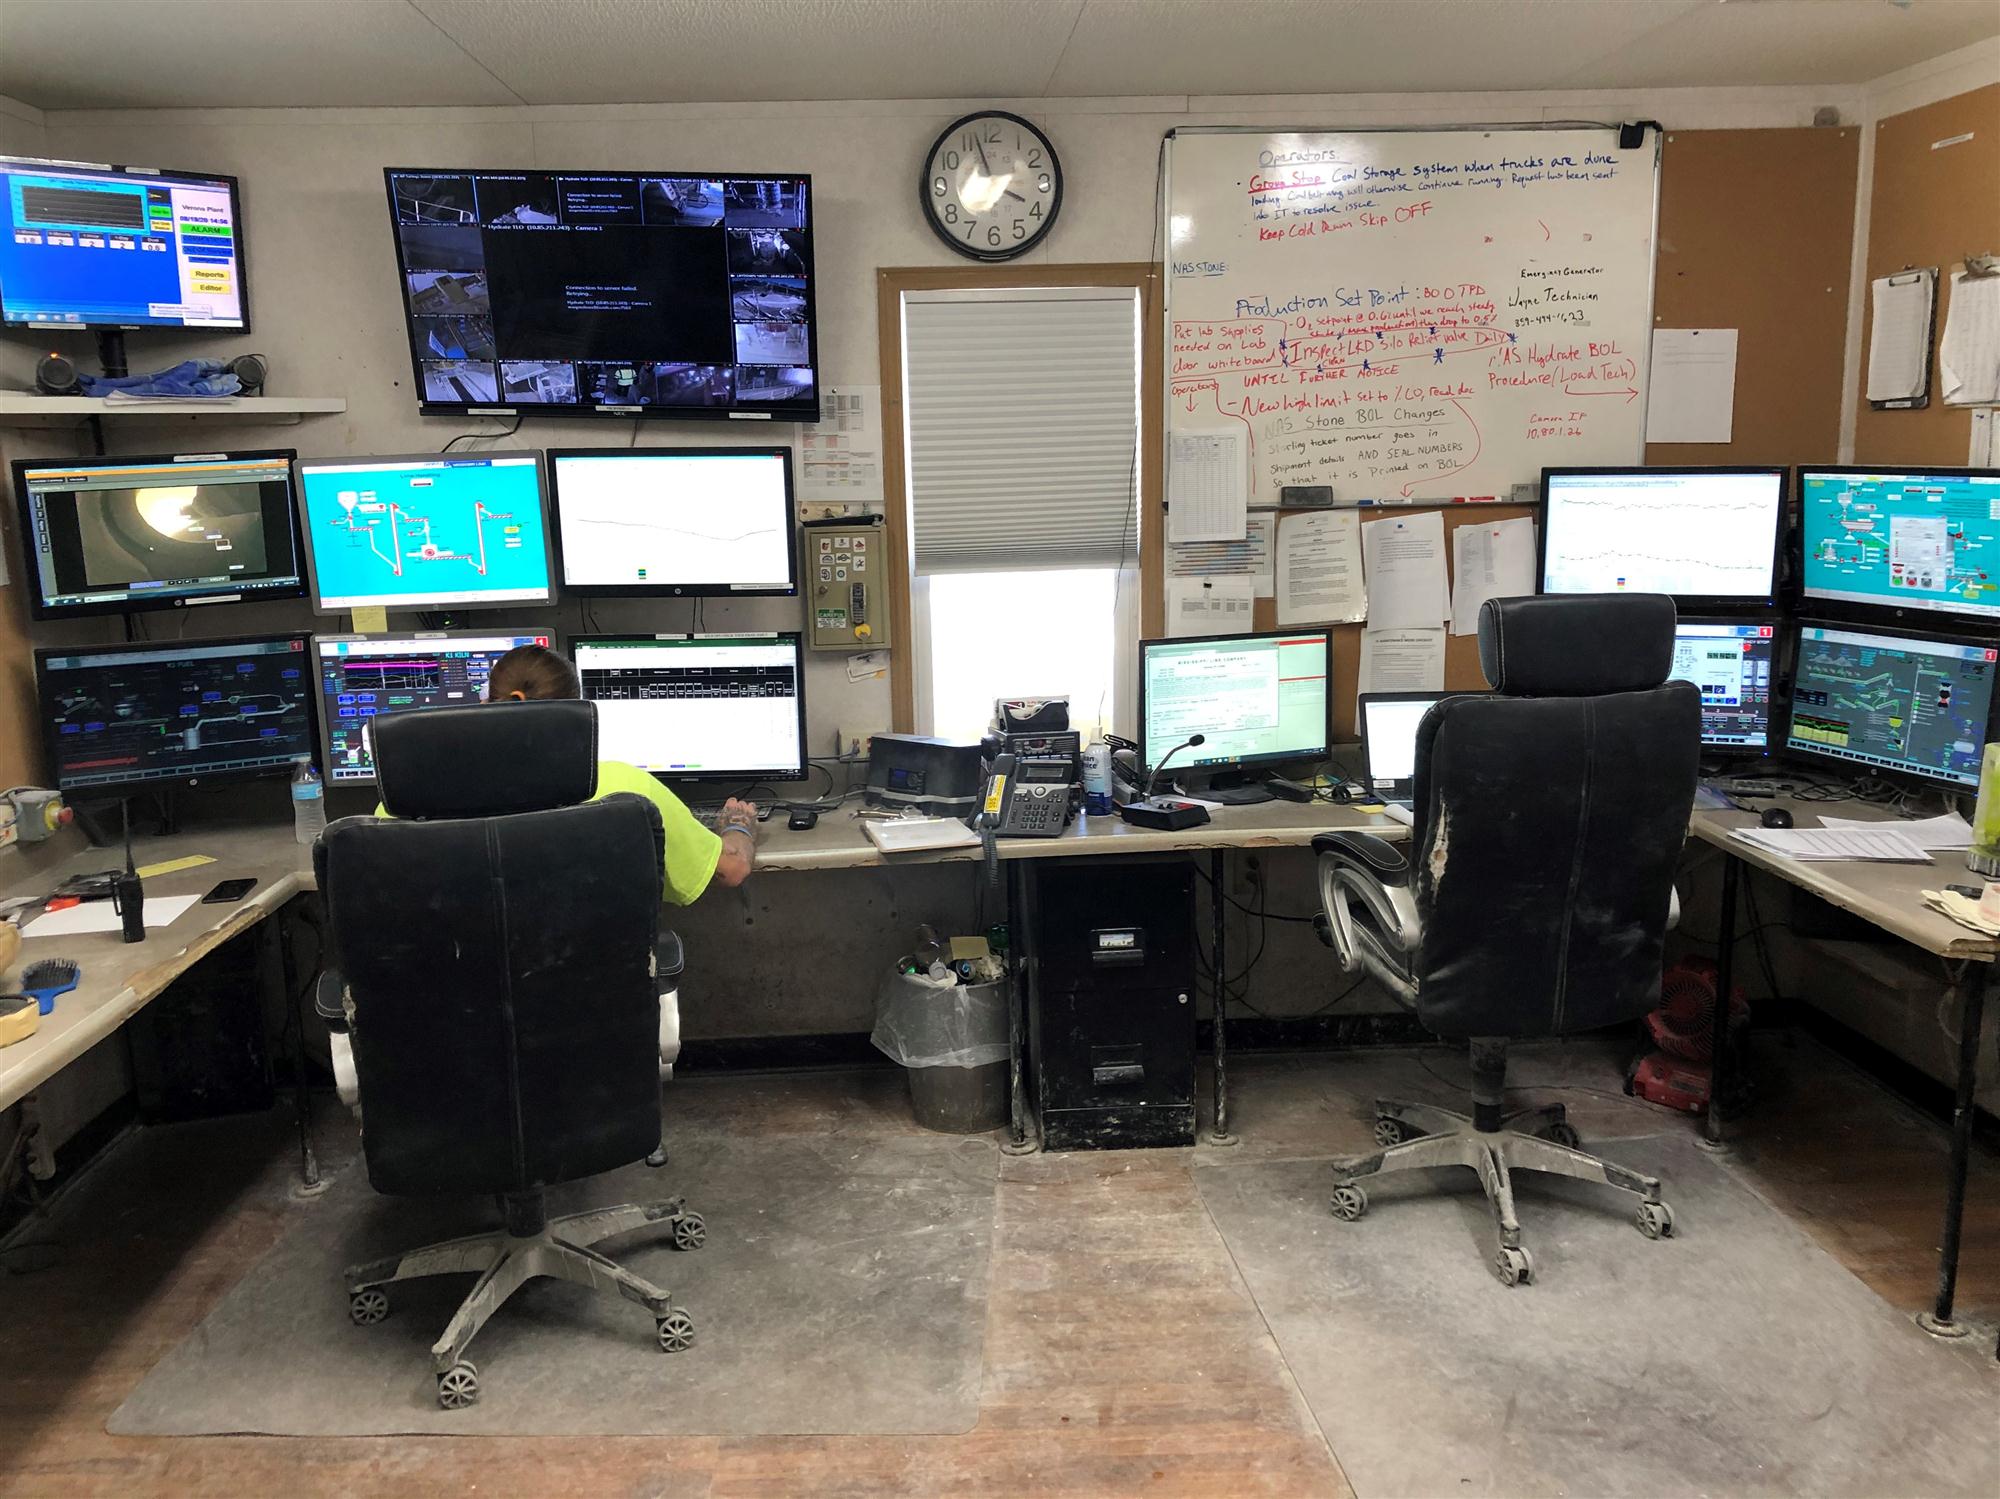 Kentucky control room casework & countertops